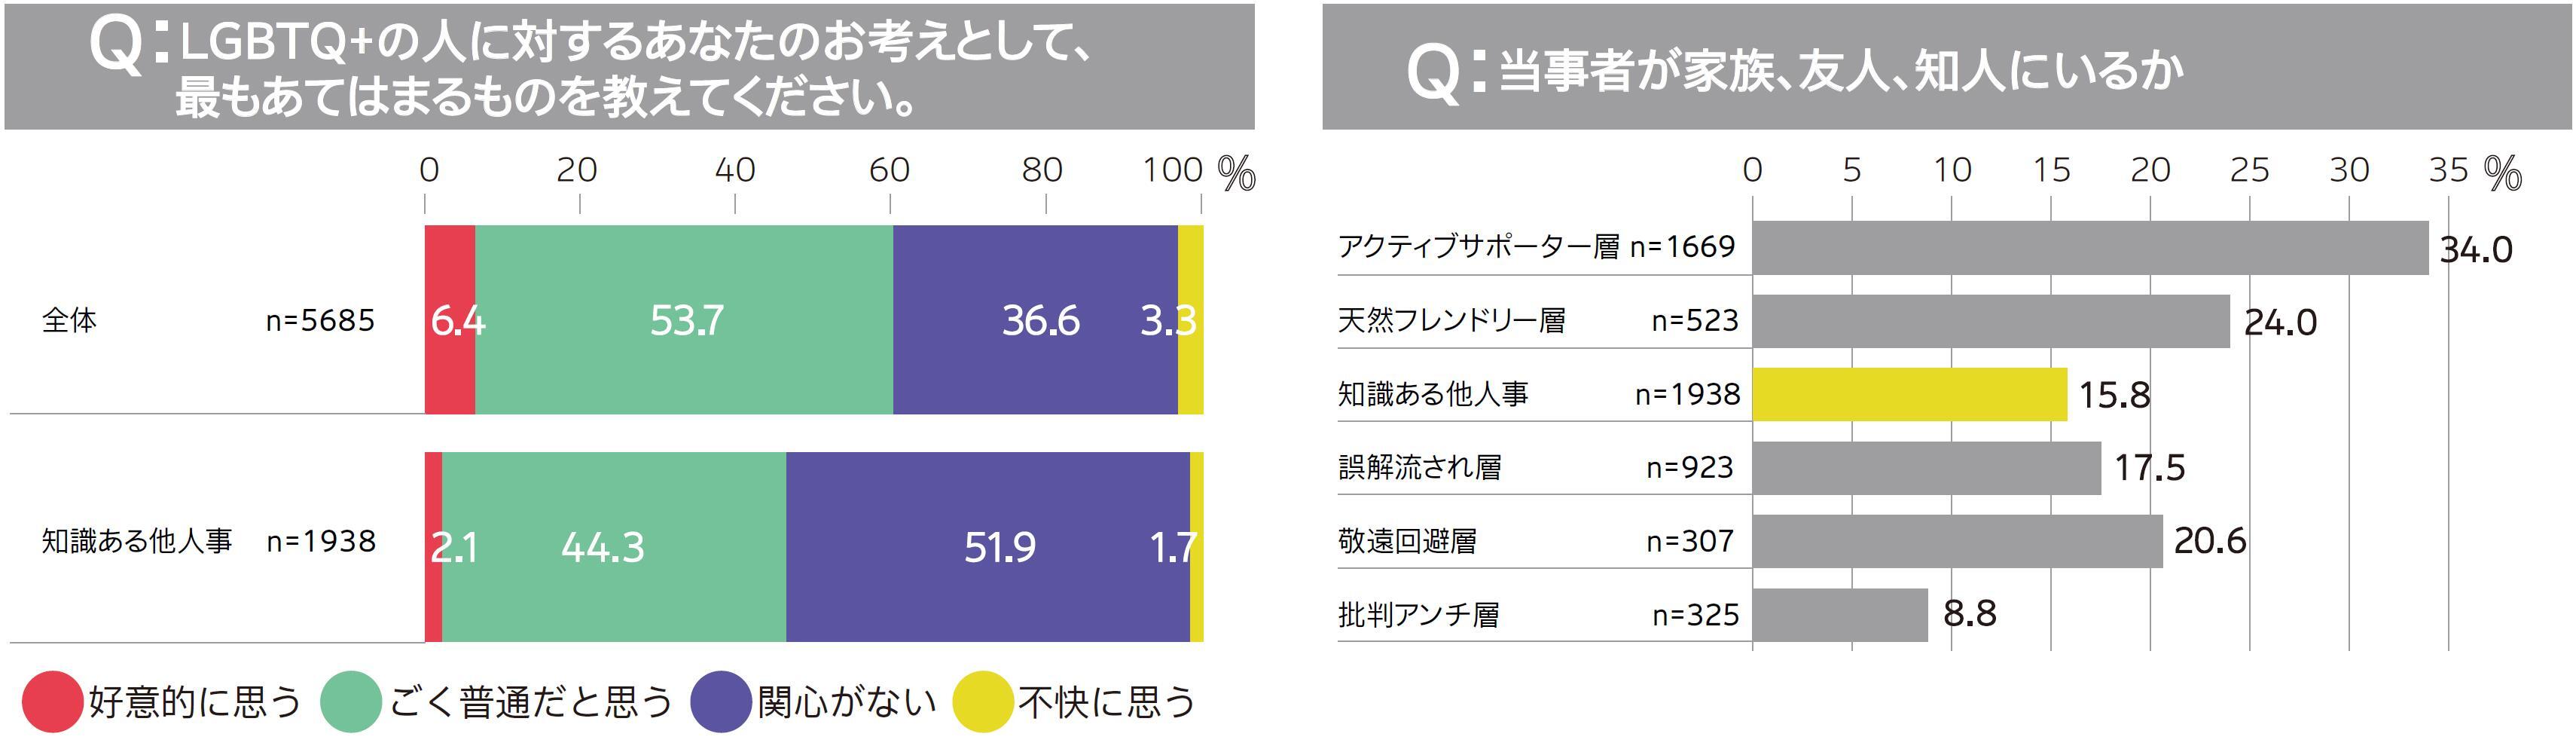 セクシャル 割合 ア LGBTの割合は？日本と世界でグラフ化。［2020年最新の調査結果］ ｜